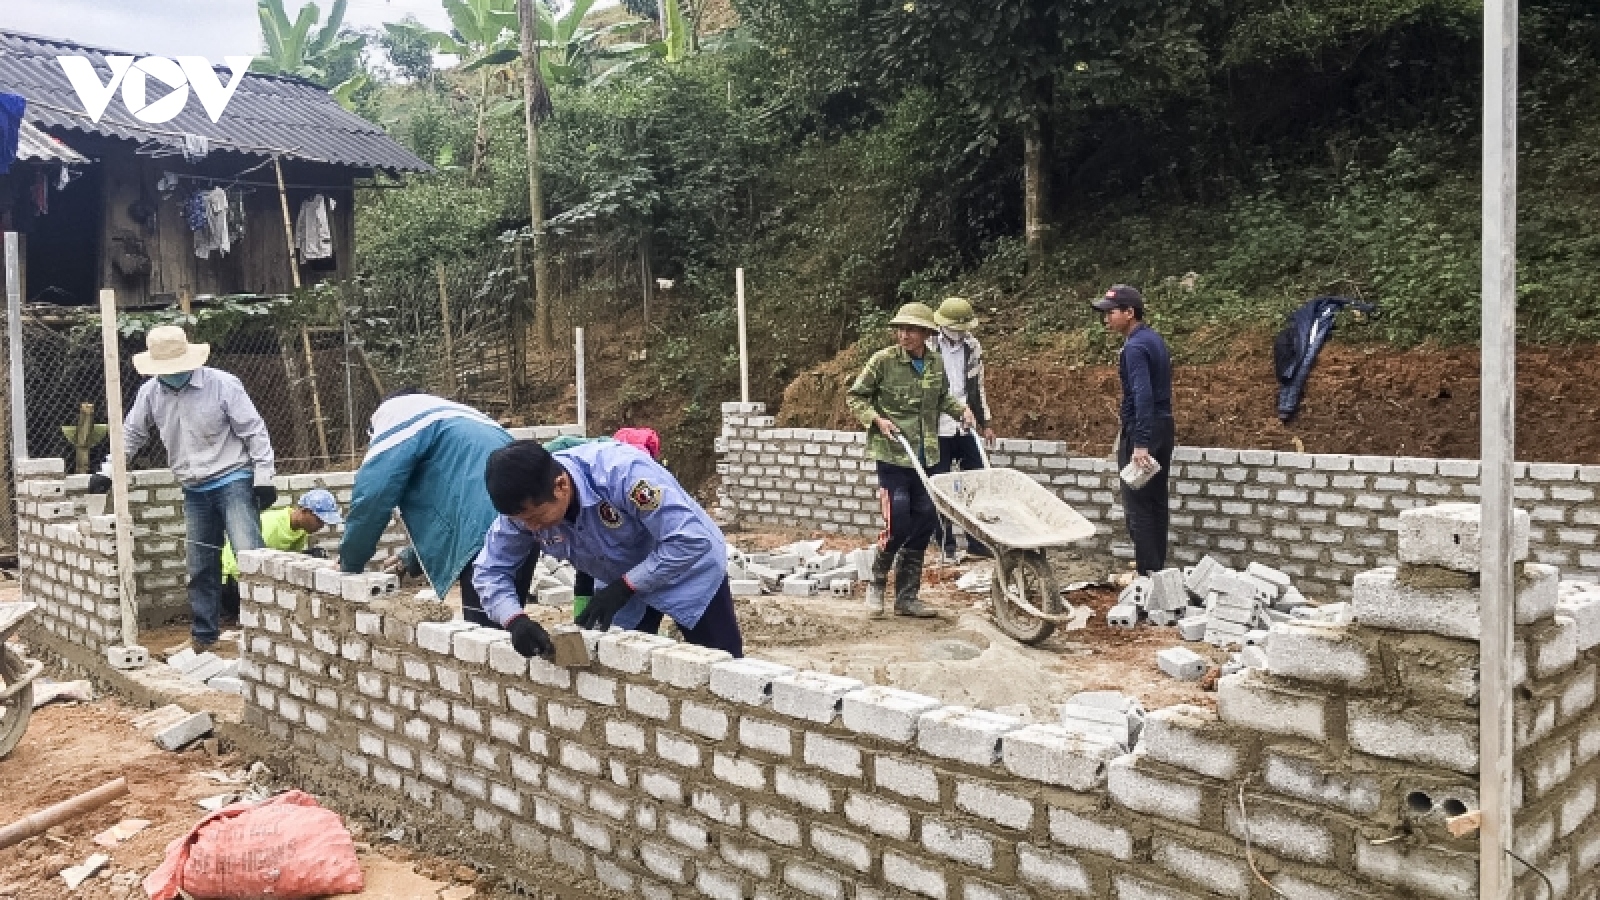 Dồn sức hoàn thiện 1.000 nhà ở cho hộ nghèo ở Điện Biên Đông trước Tết Nguyên đán